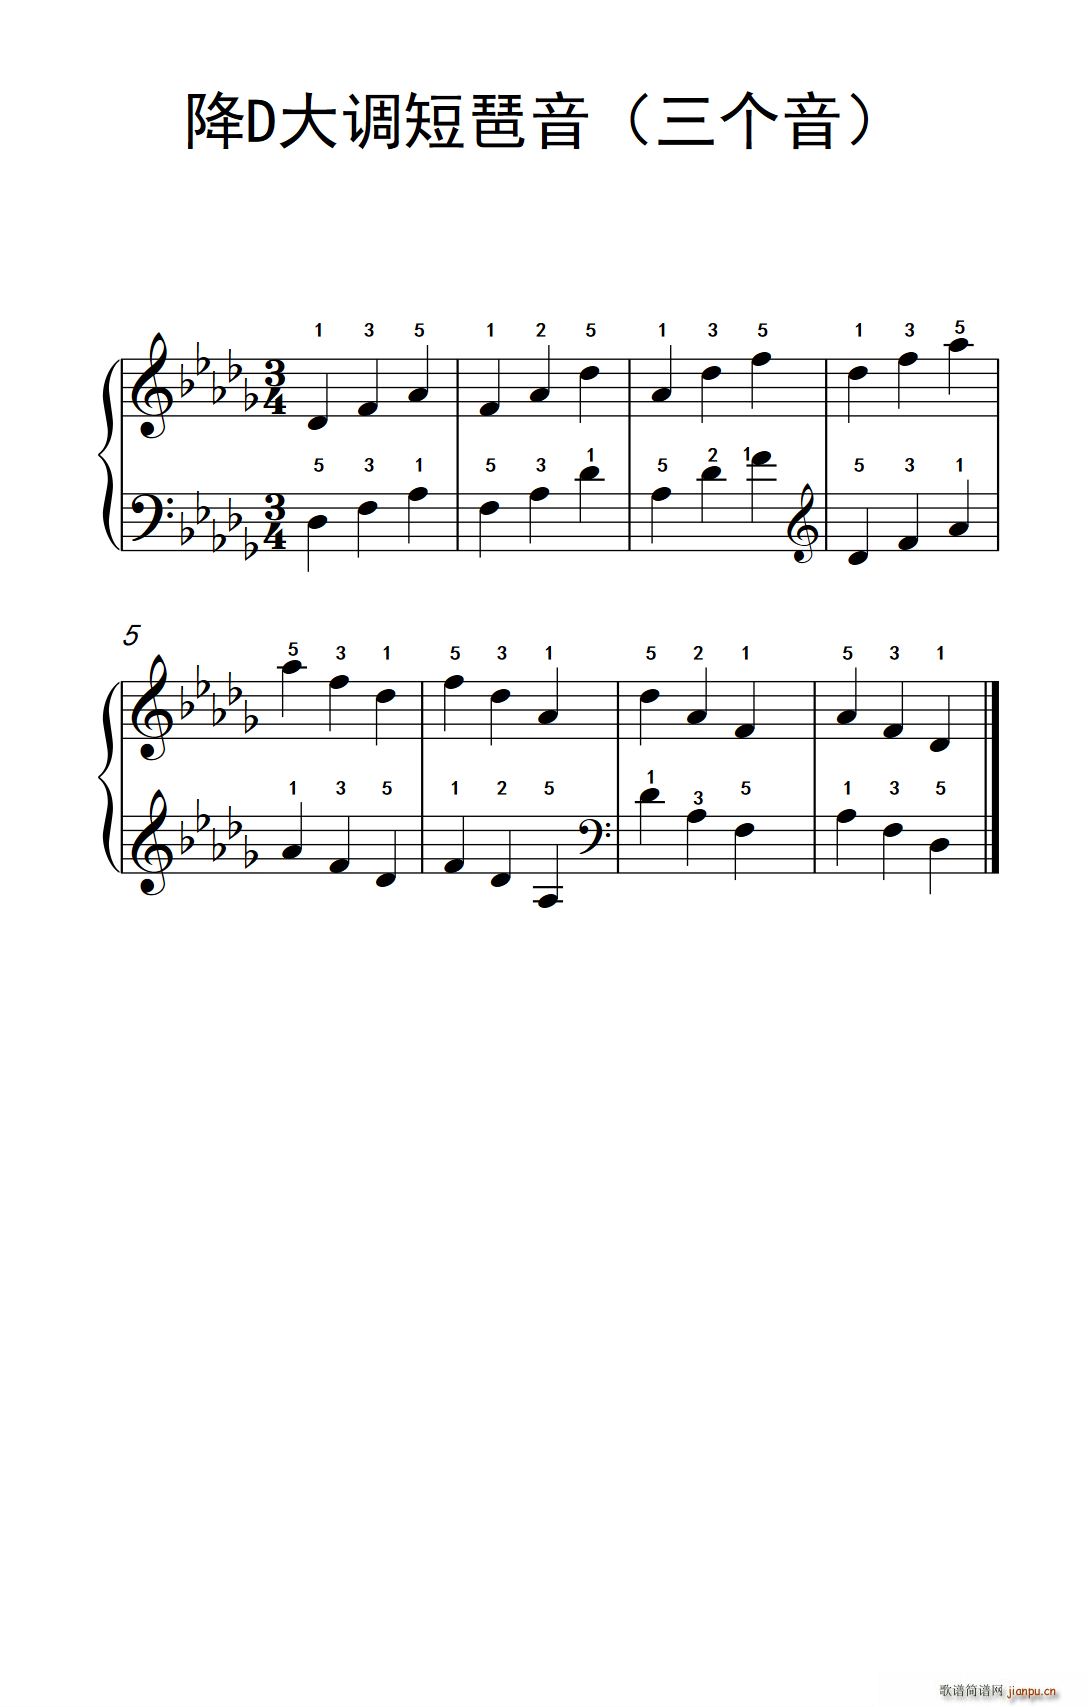 降d大调短琶音(三个音)(孩子们的钢琴音阶,和弦与琶音图片